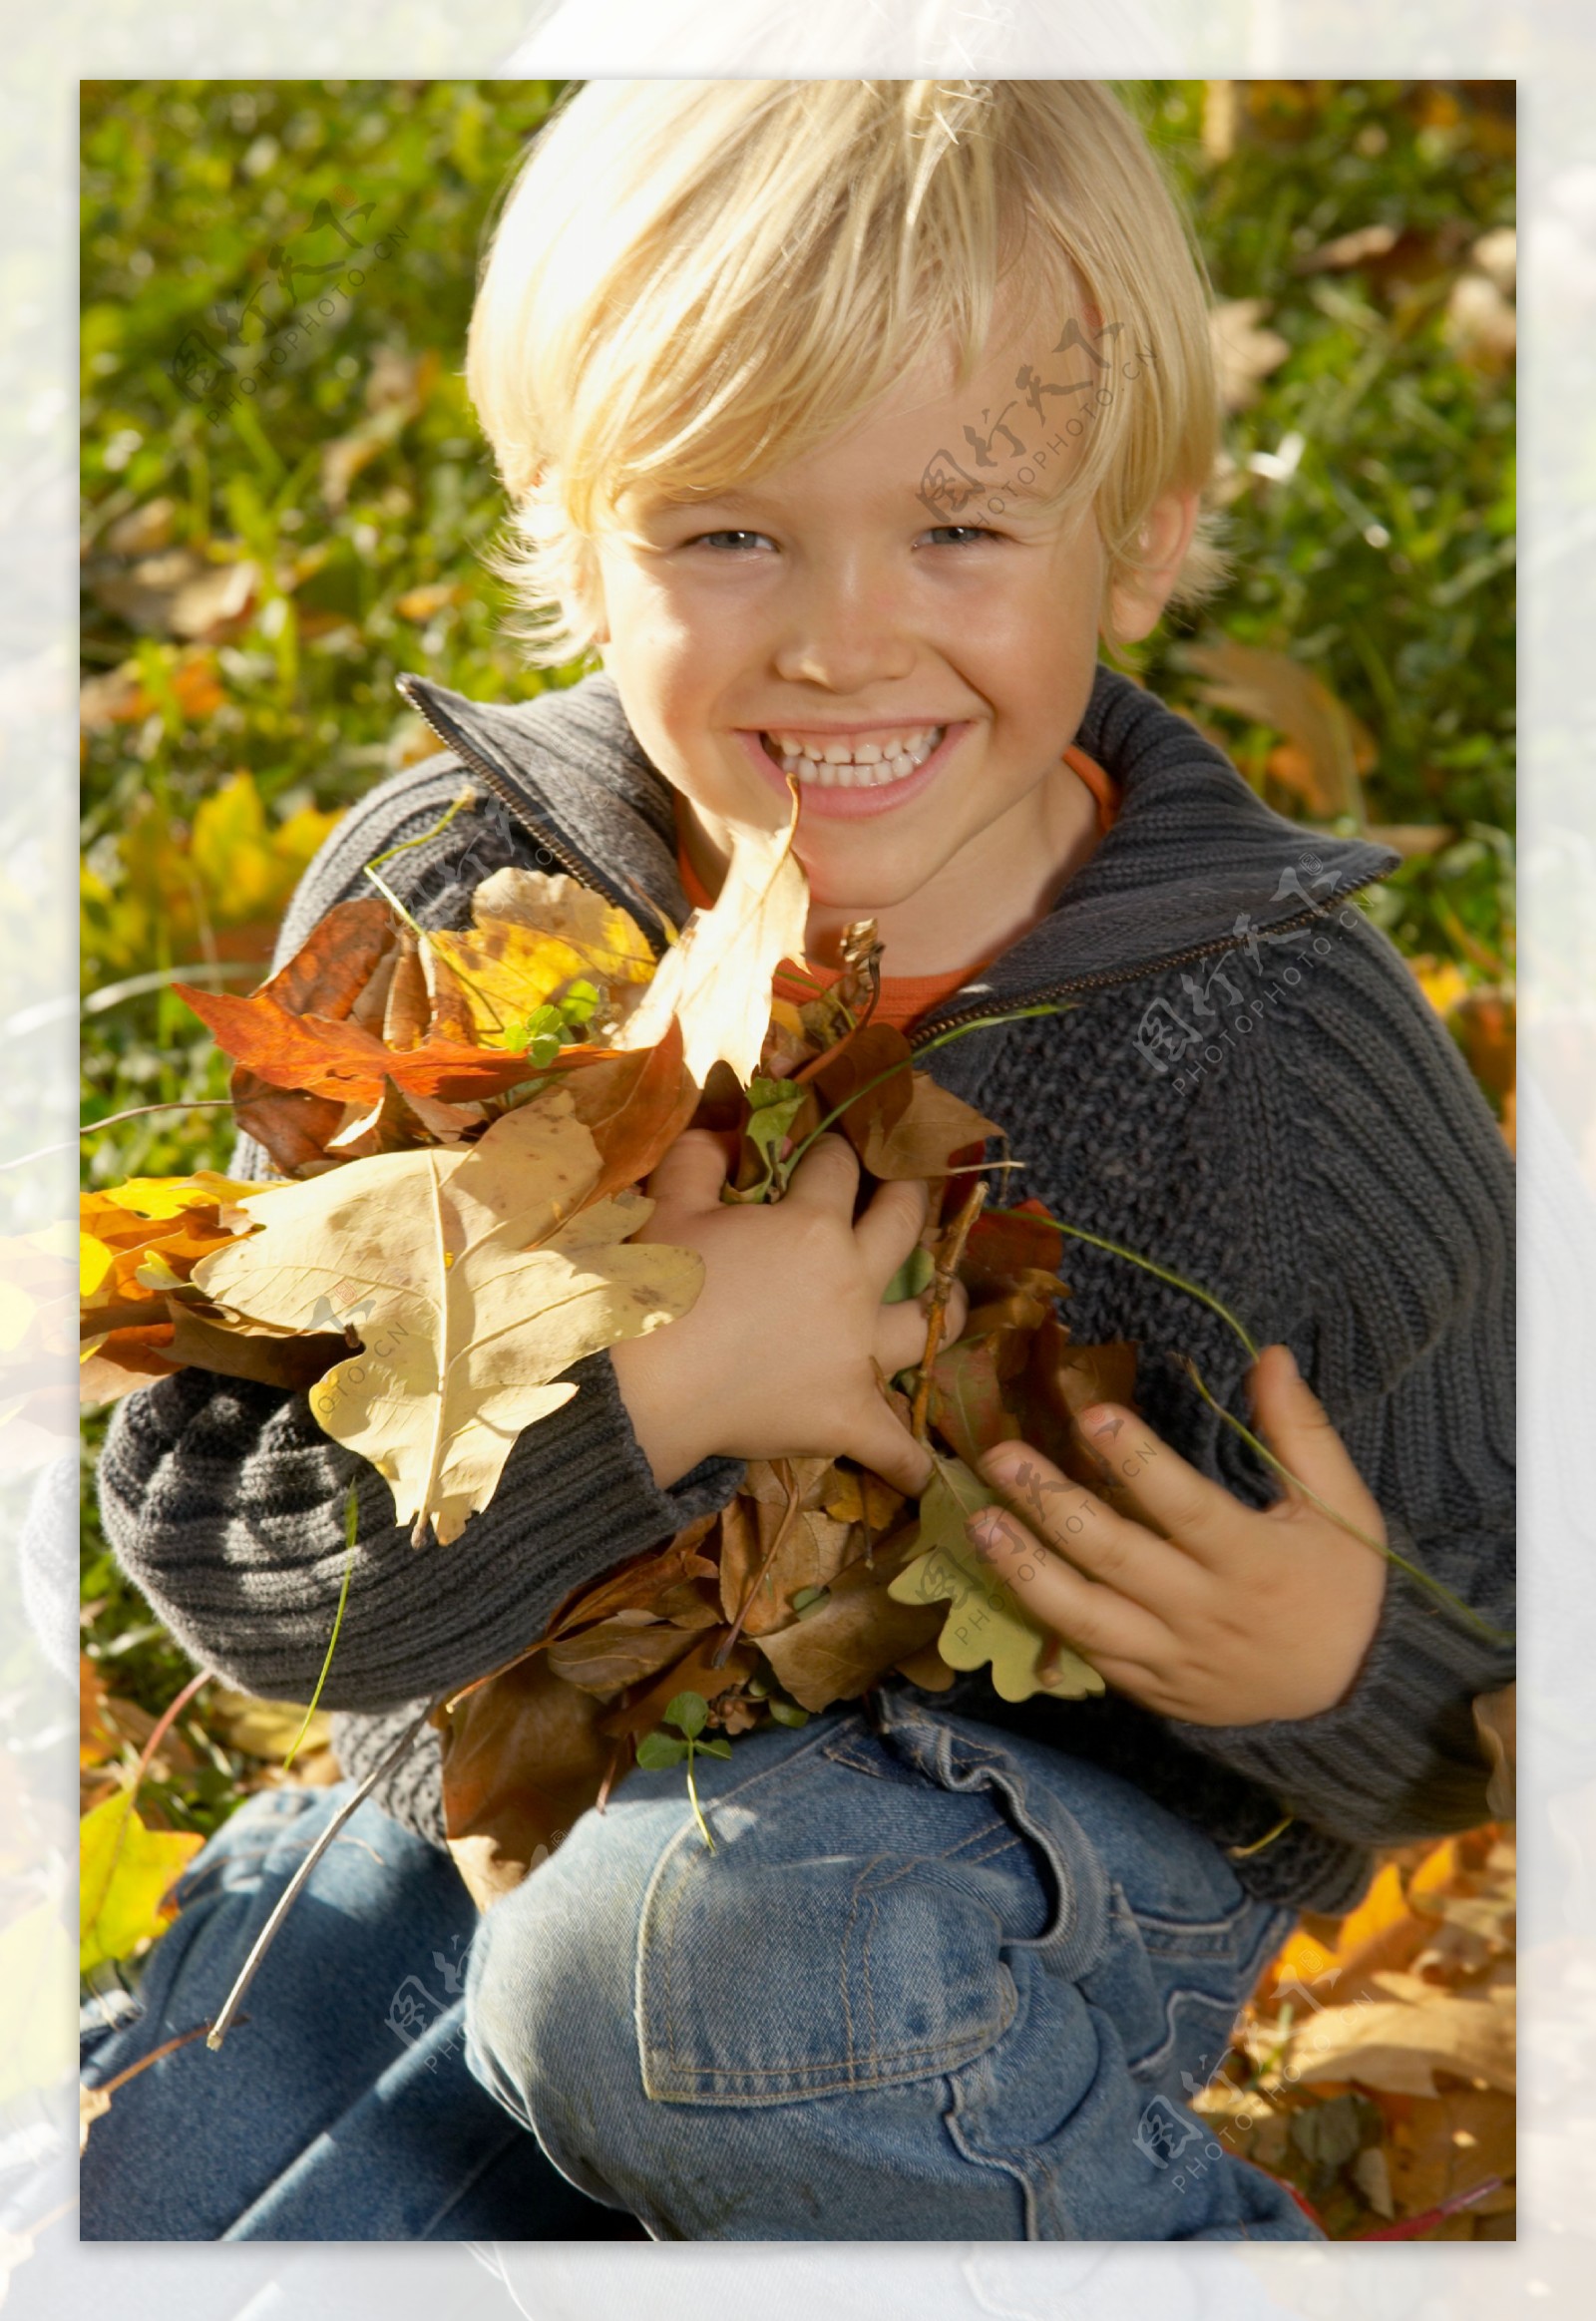 抱树叶的小男孩图片